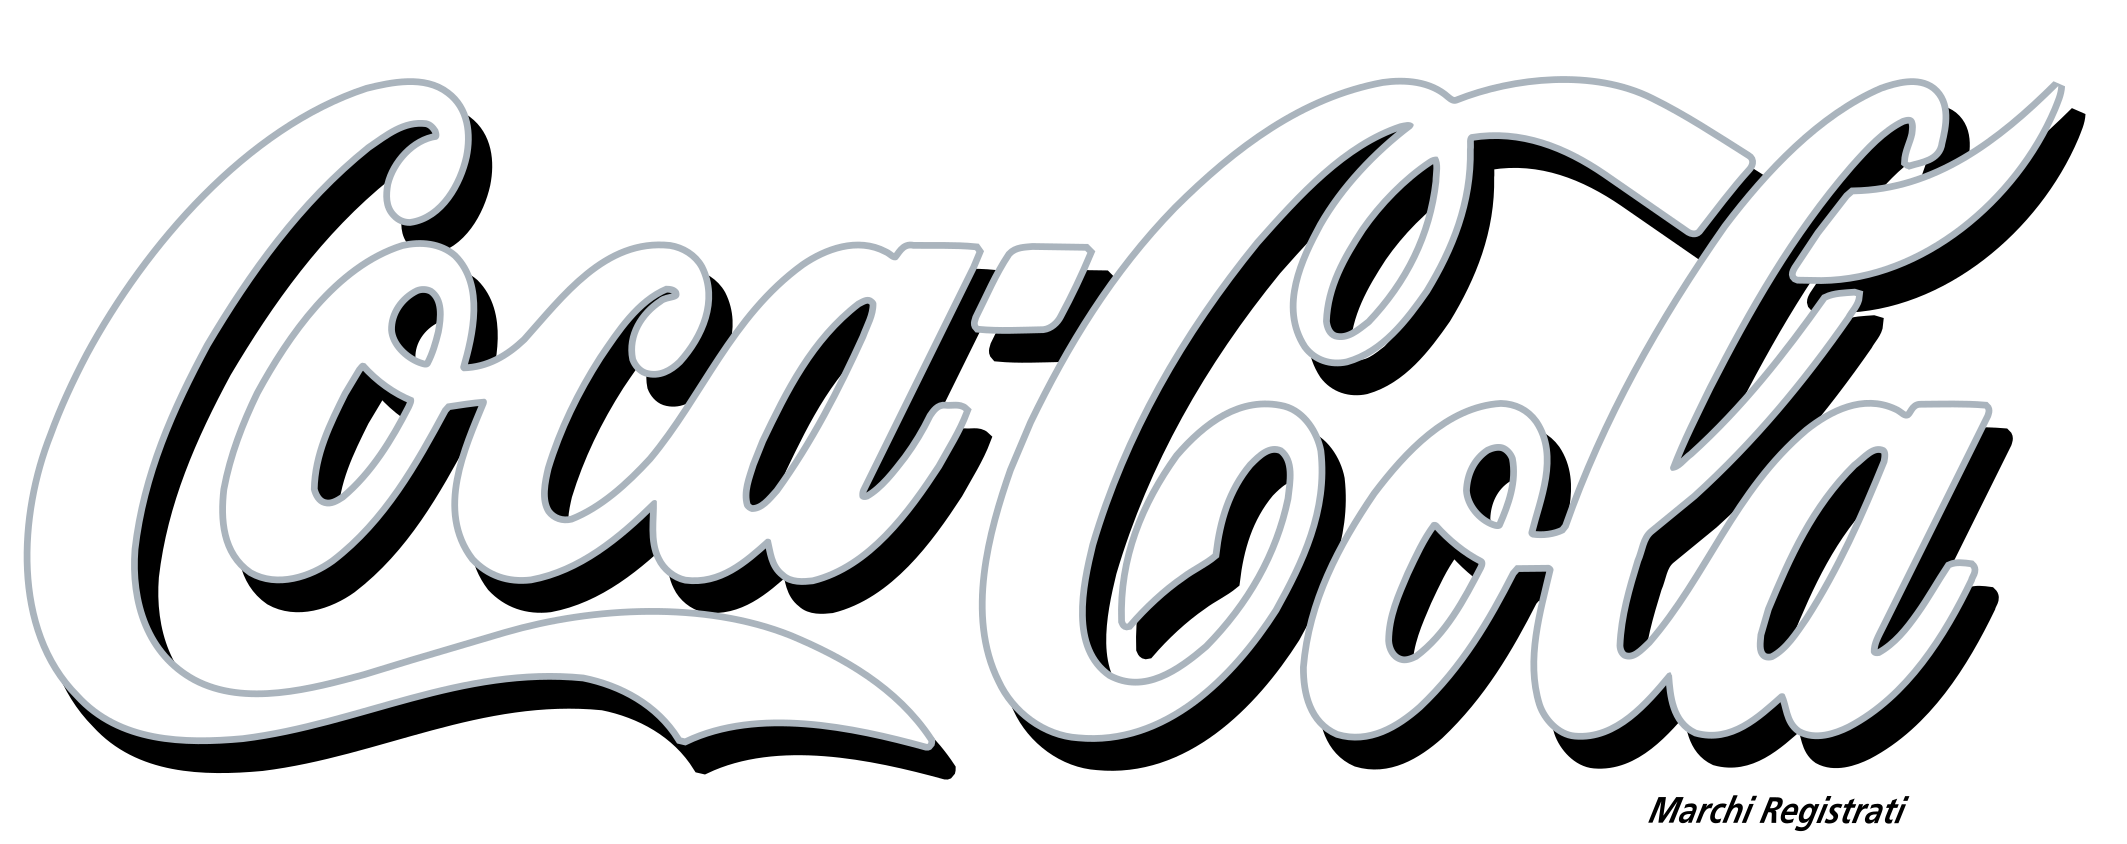 Coca-Cola Transparent Background